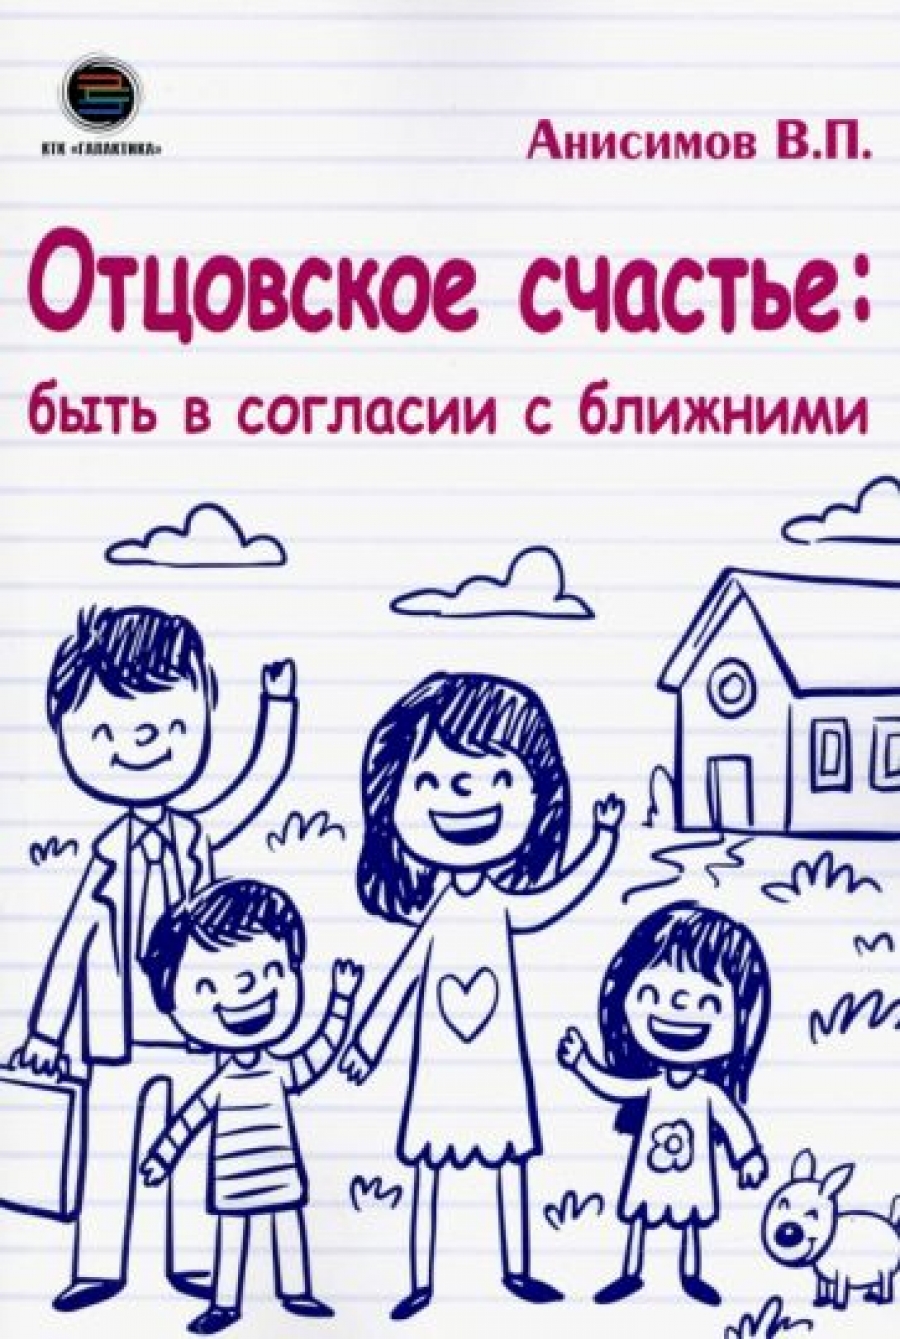 Анисимов В. - Отцовское счастье: быть в согласии с ближними 